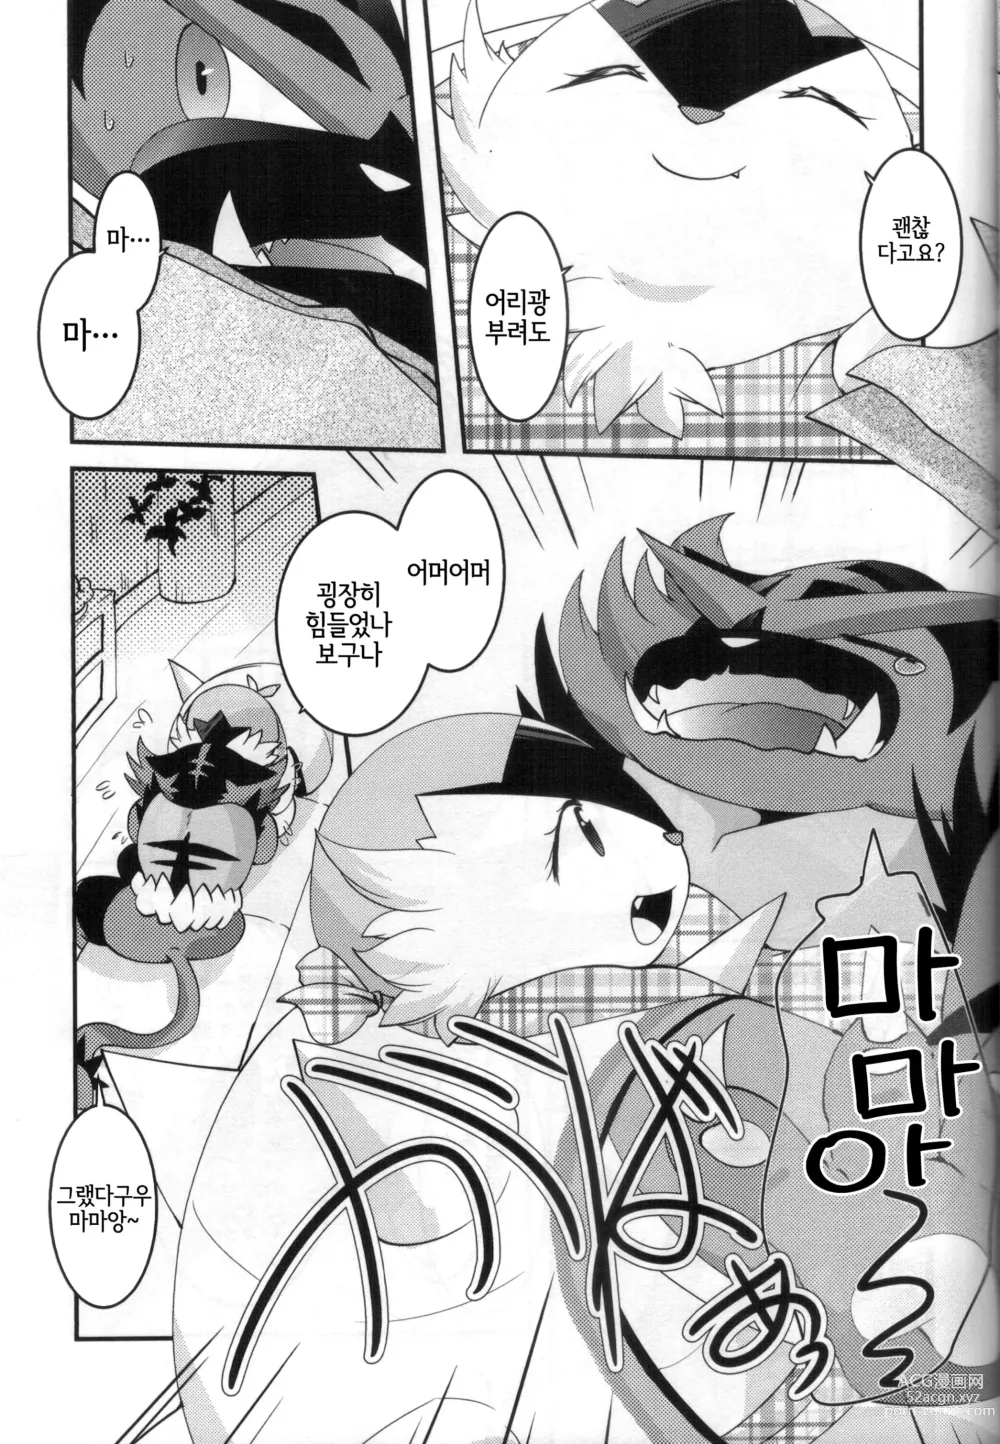 Page 10 of doujinshi 아빠도 엄마한테 어리광 부리고 싶어!